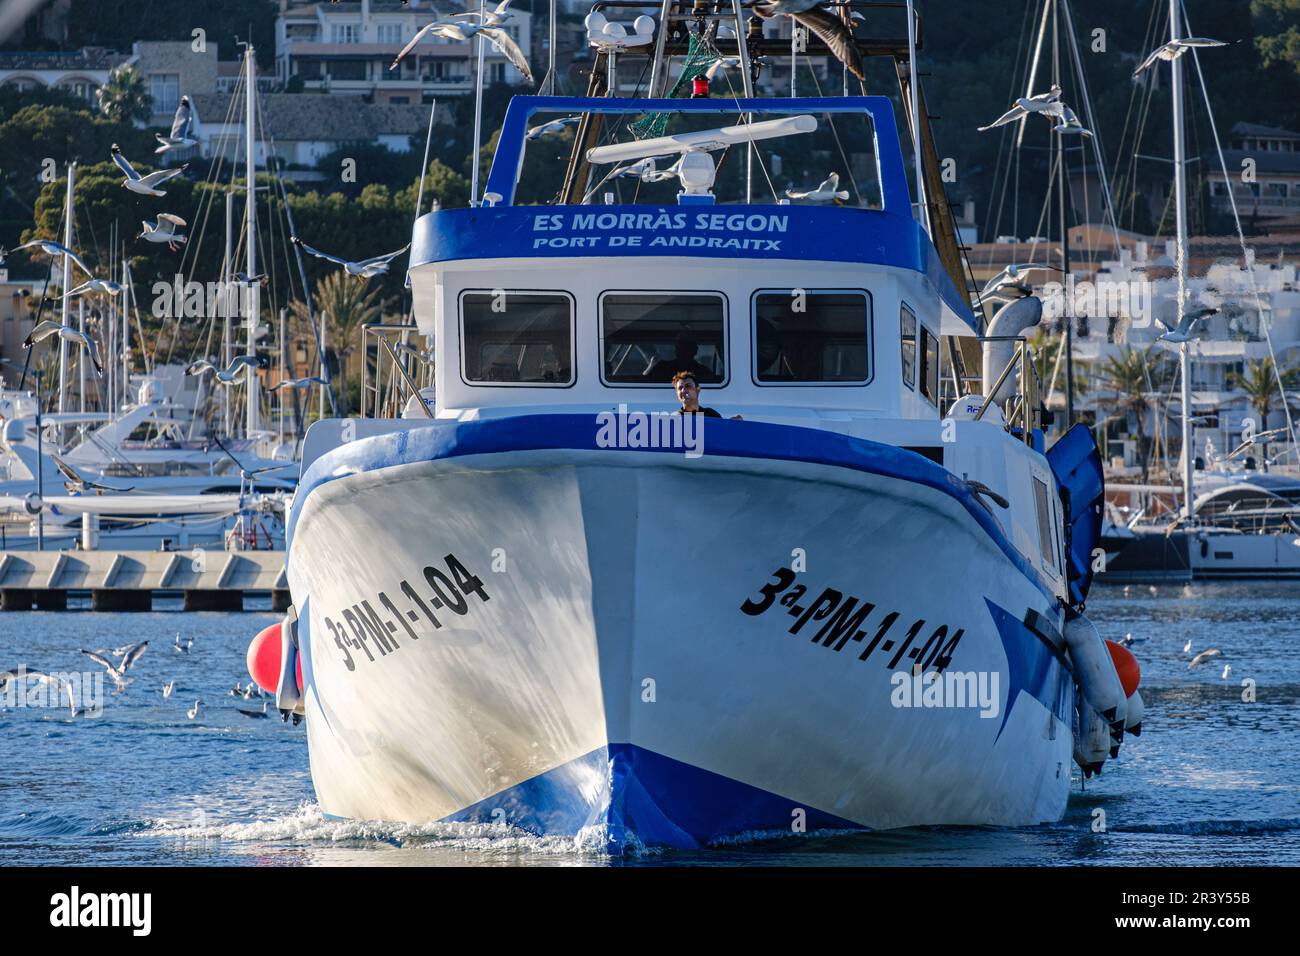 Pesca de arrastre o pesca de bou Stock Photo - Alamy